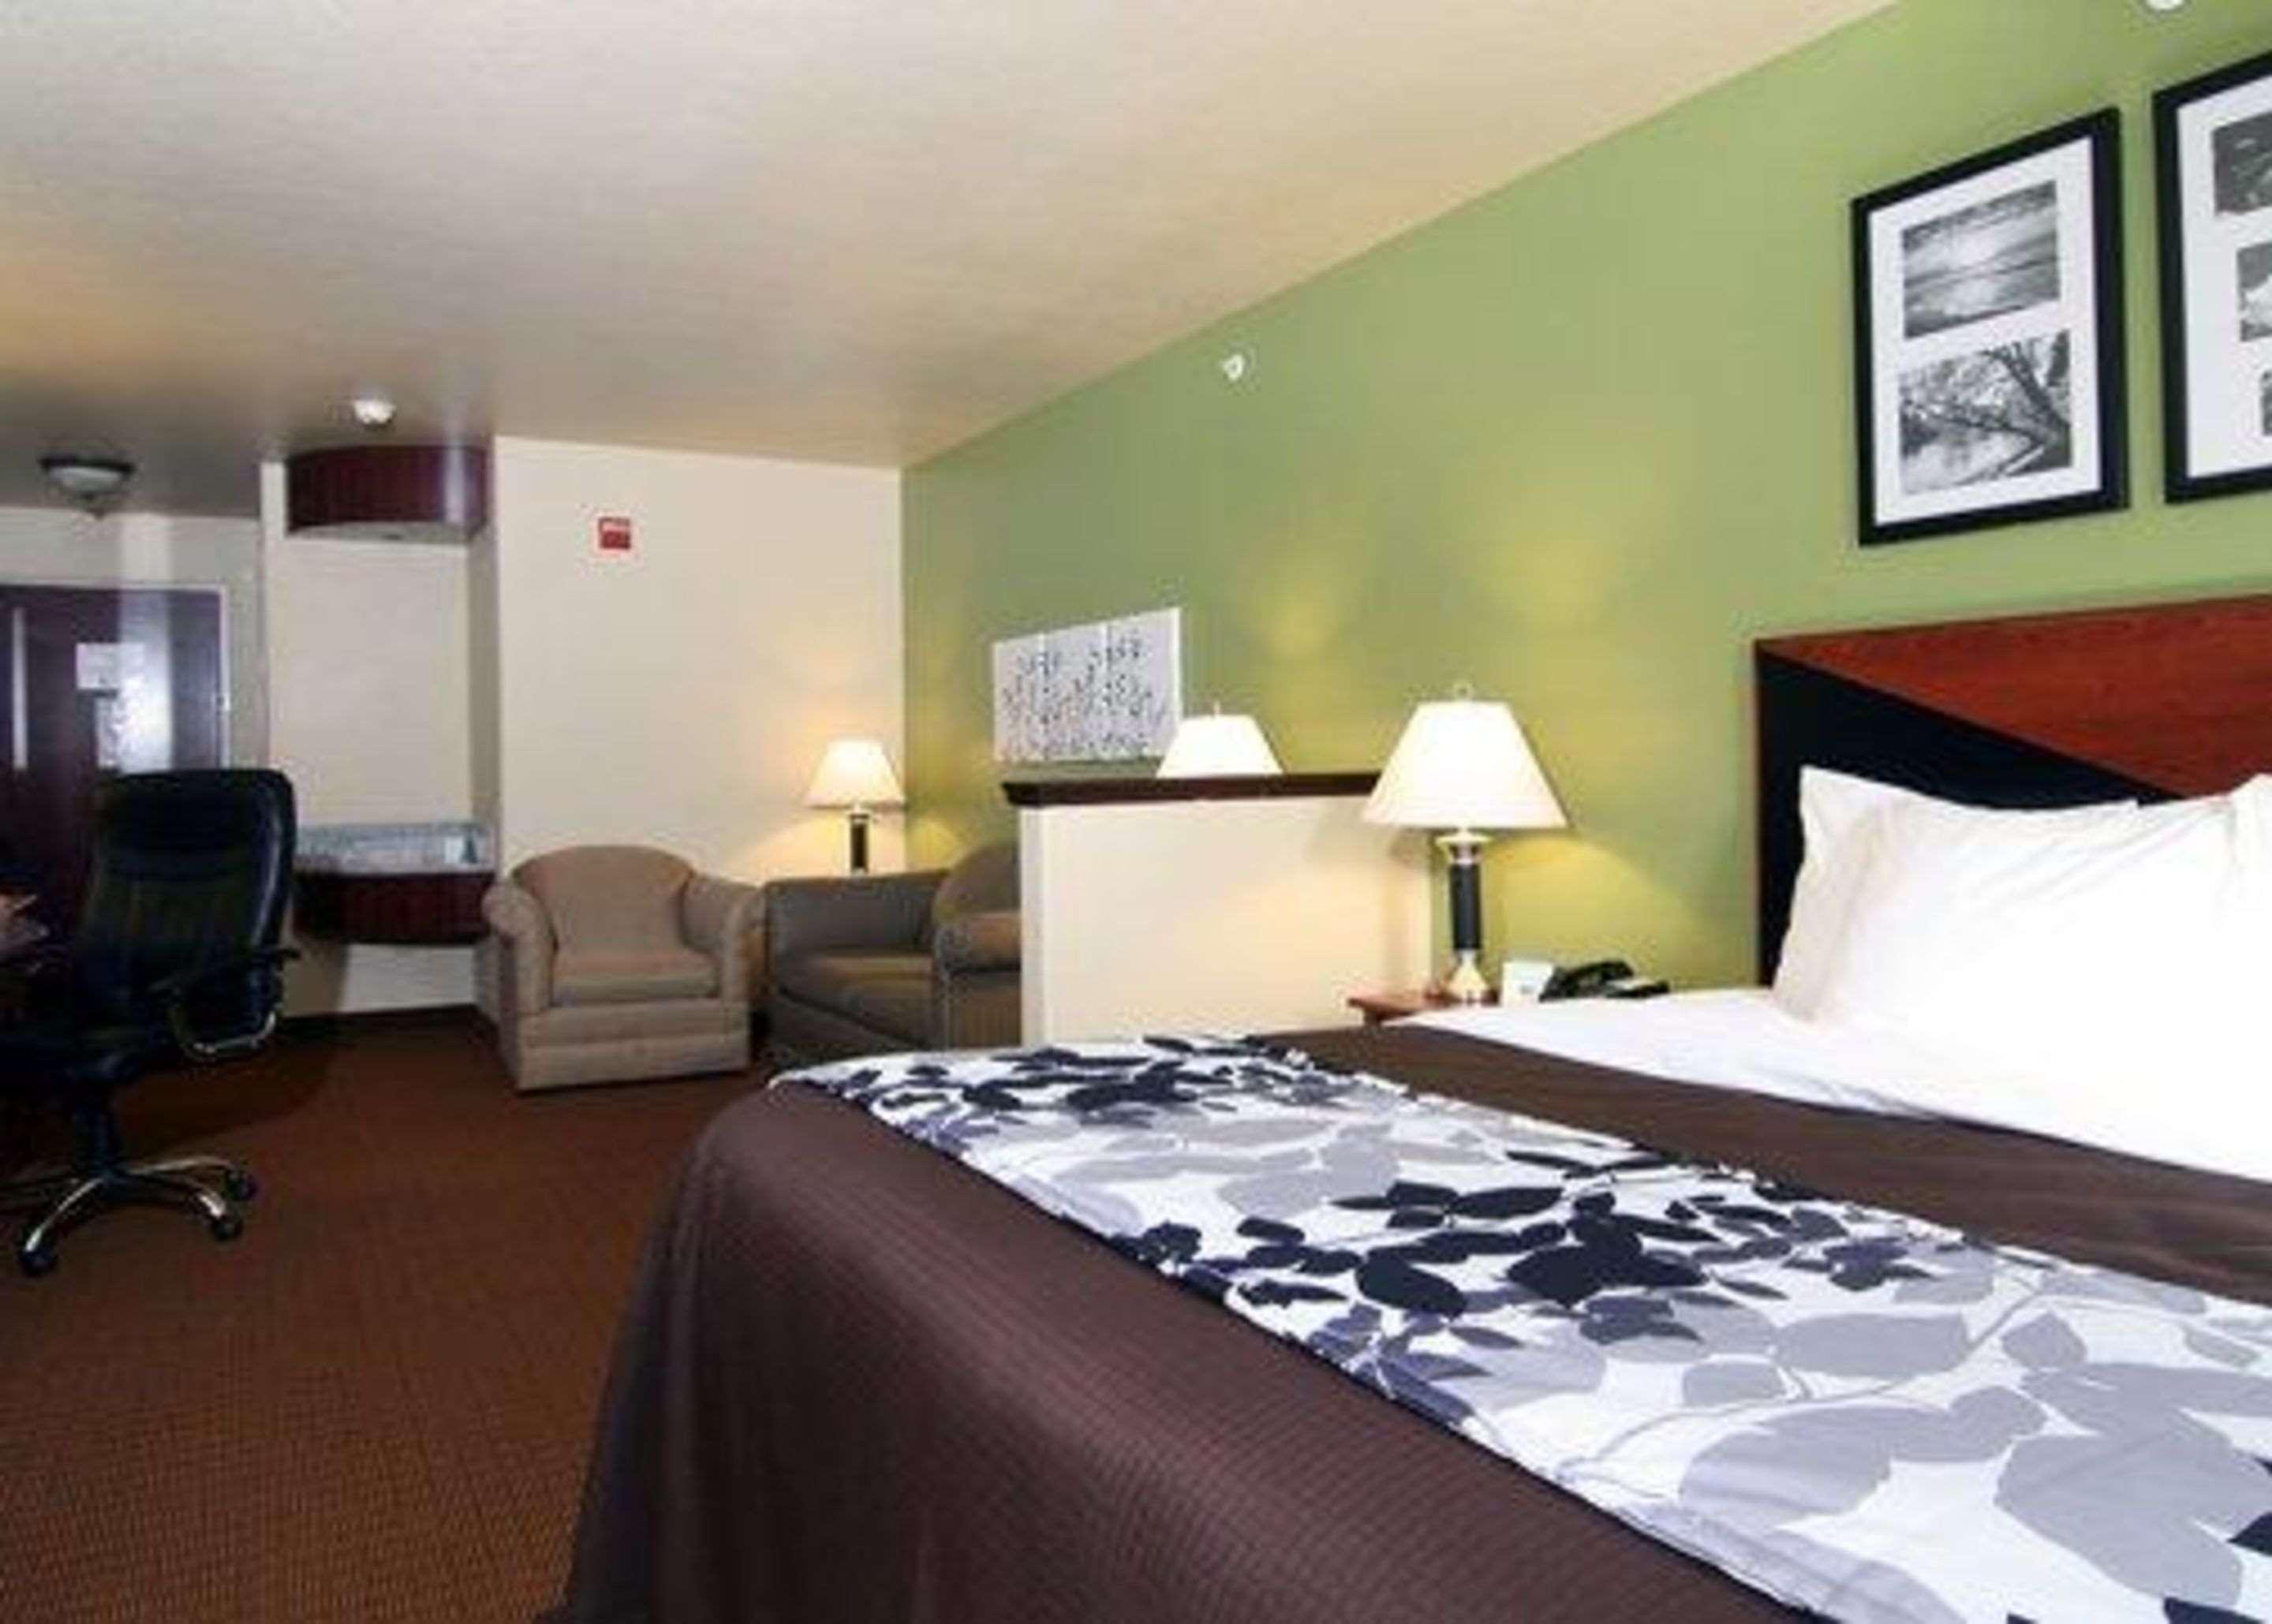 Sleep Inn & Suites Shamrock Room photo